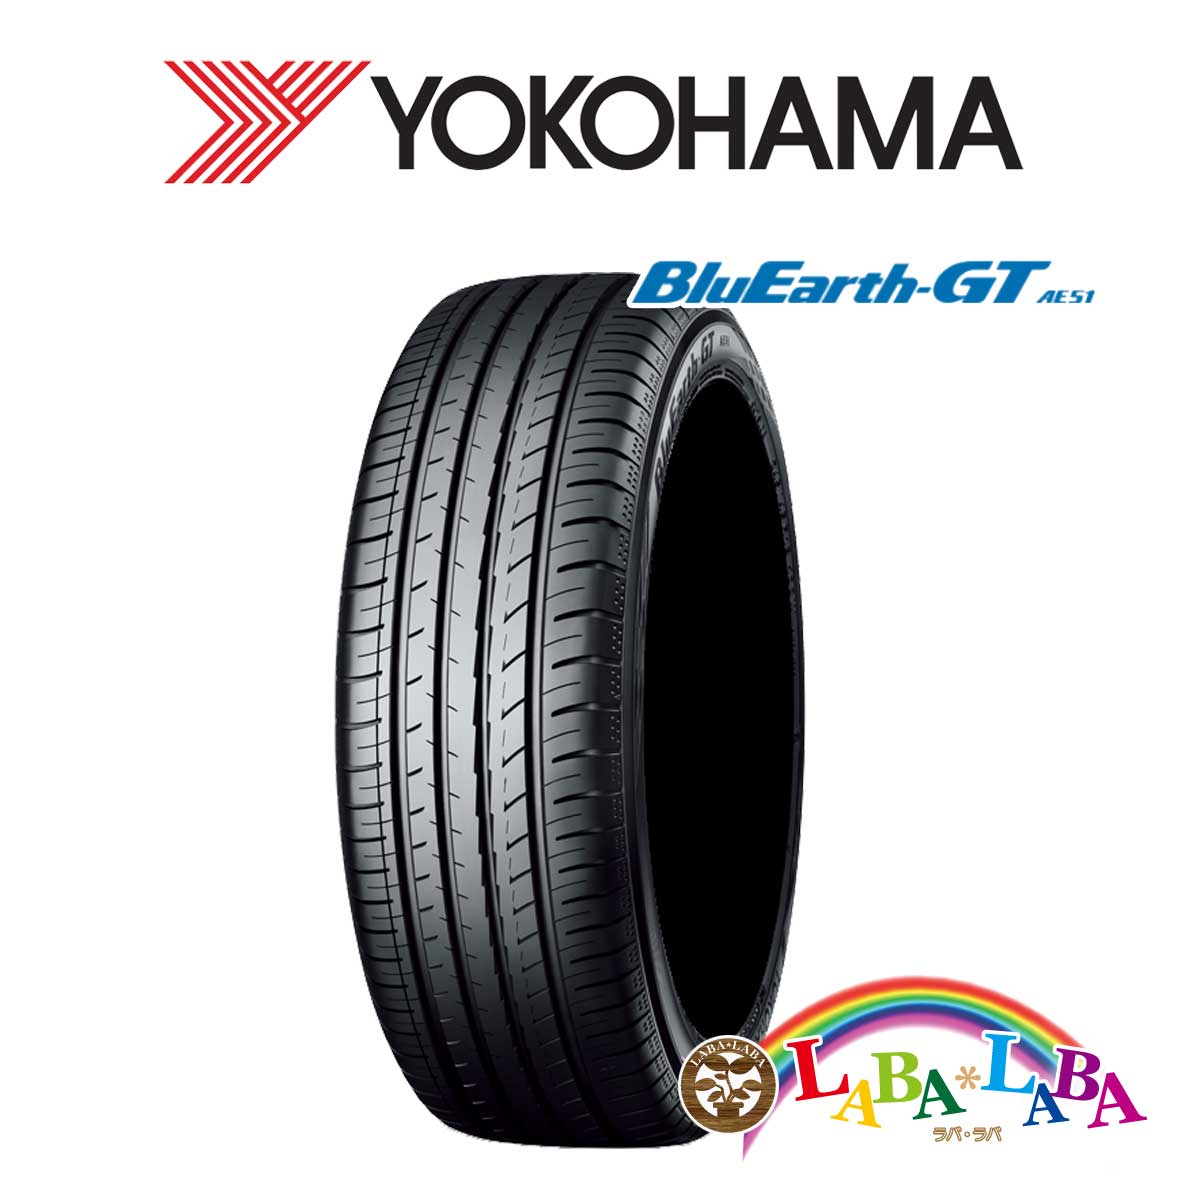 送料無料 国産タイヤ サマータイヤ 新品 日本限定 タイヤのみ 2本SET 代引不可 YOKOHAMA ヨコハマ BluEarth-GT 87V AE51 2本セット ブルーアース 195 55R16